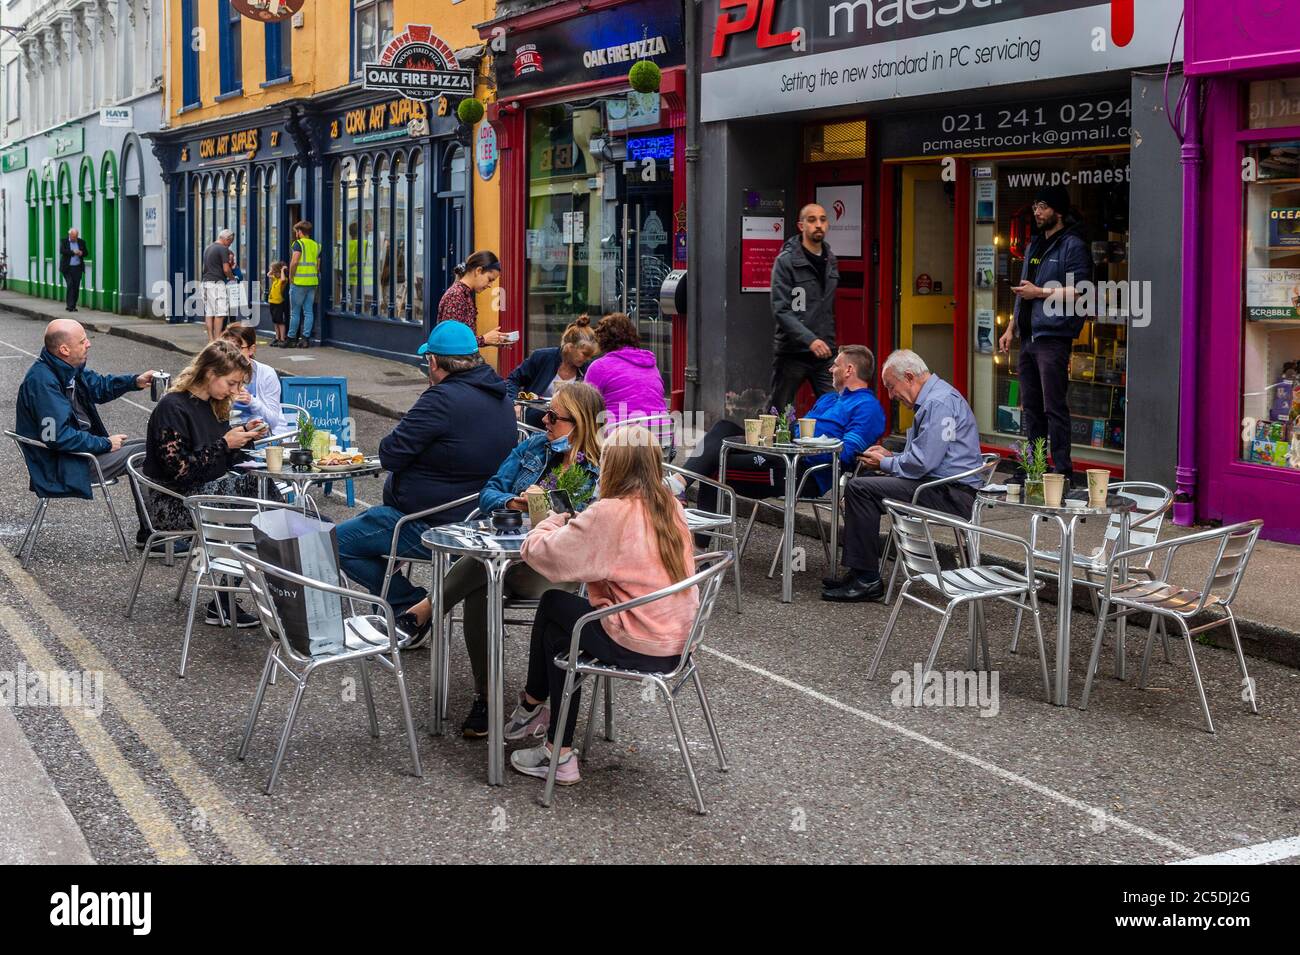 Cork, Irlanda. 2 de julio de 2020. Princes Street en la ciudad de Cork ha sido peatonal para fomentar la alimentación al aire libre como parte de los restaurantes reabriendo después de su cierre debido a Covid-19. Crédito: Agnews/Alamy Live News Foto de stock